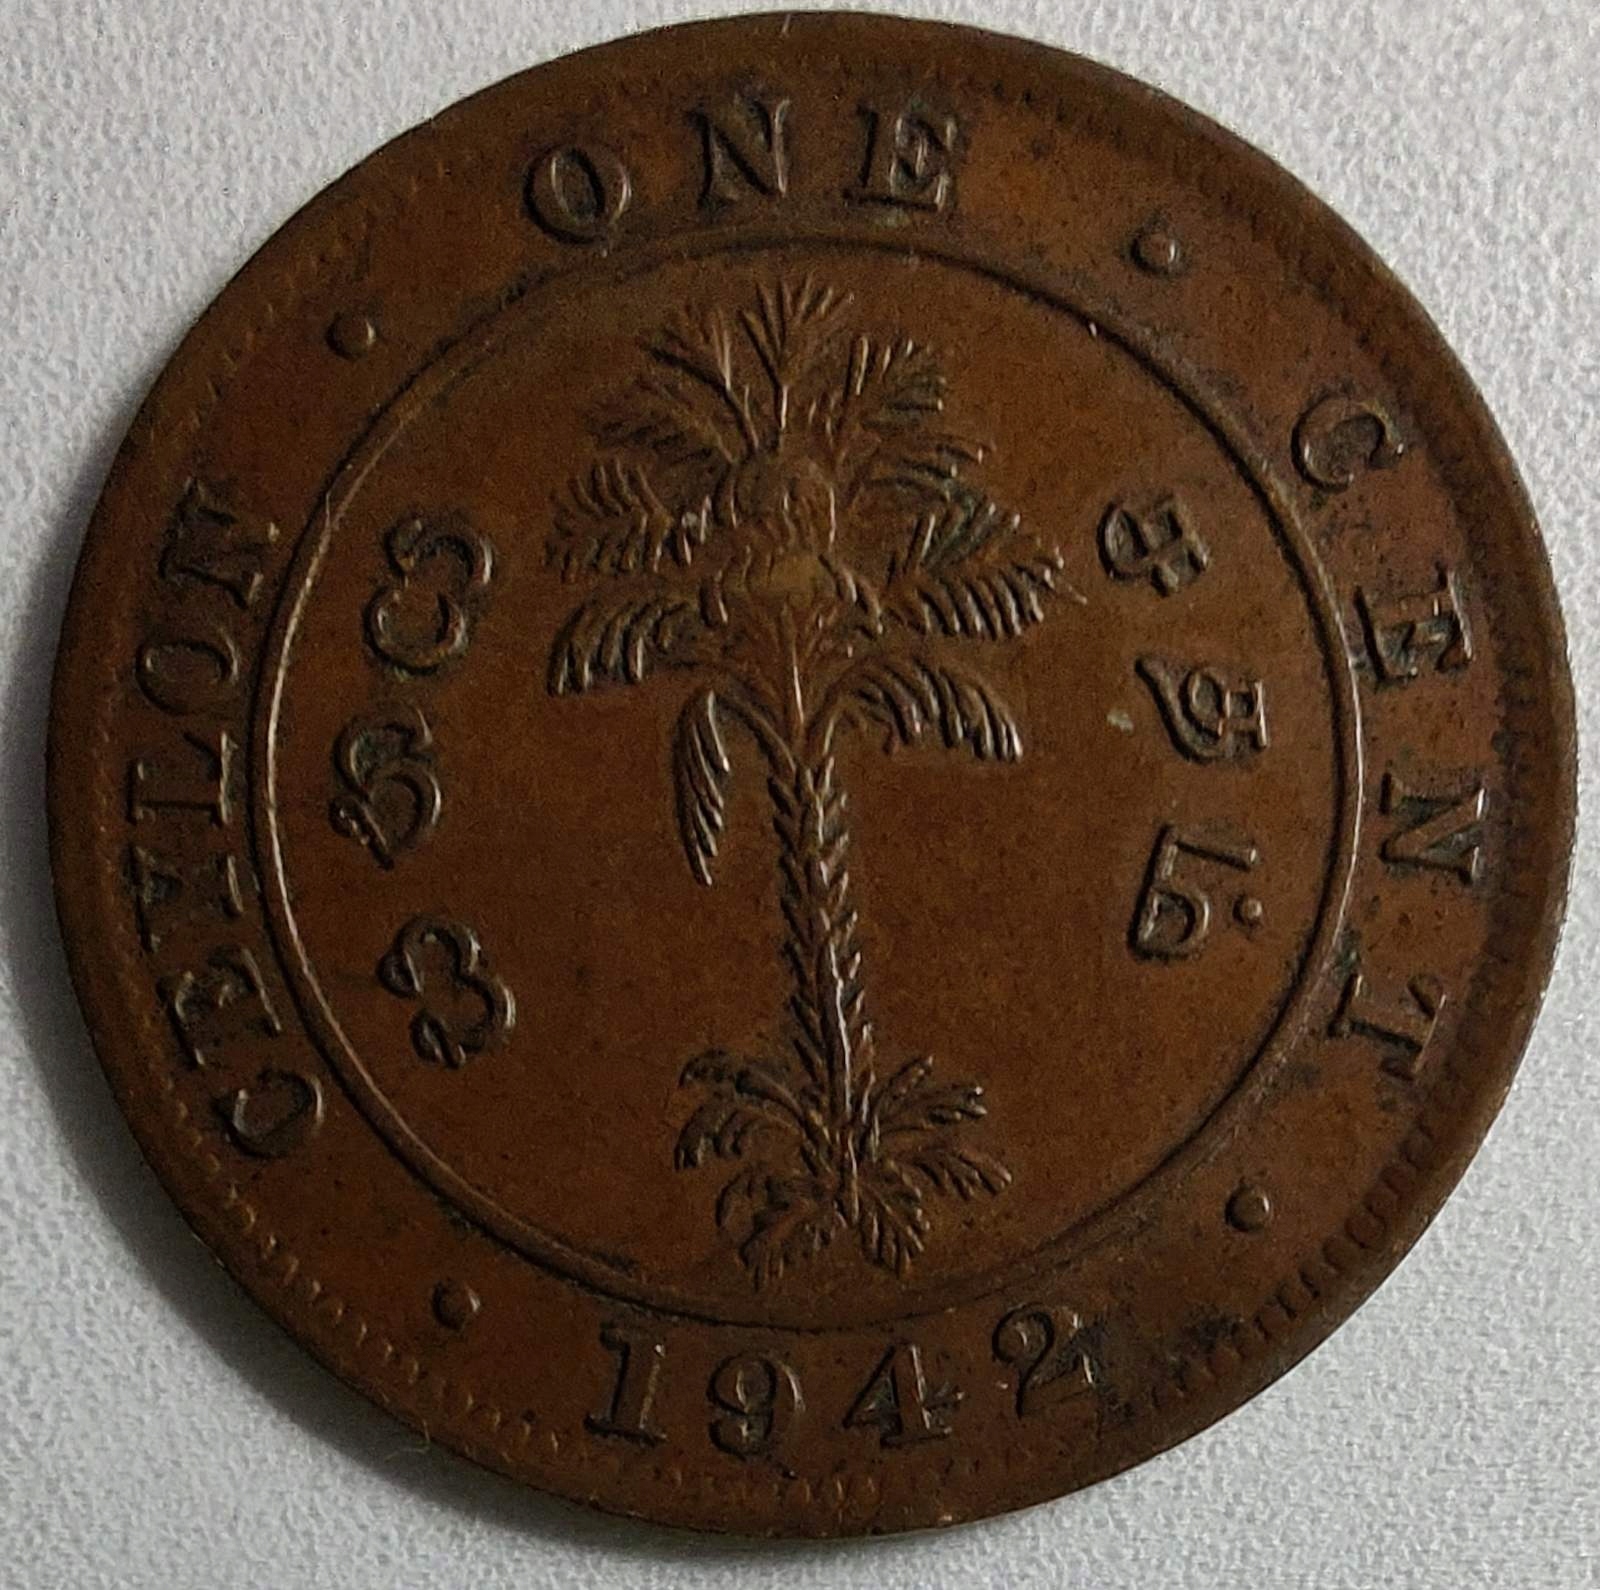 1594c - Cejlon 1 cent, 1942